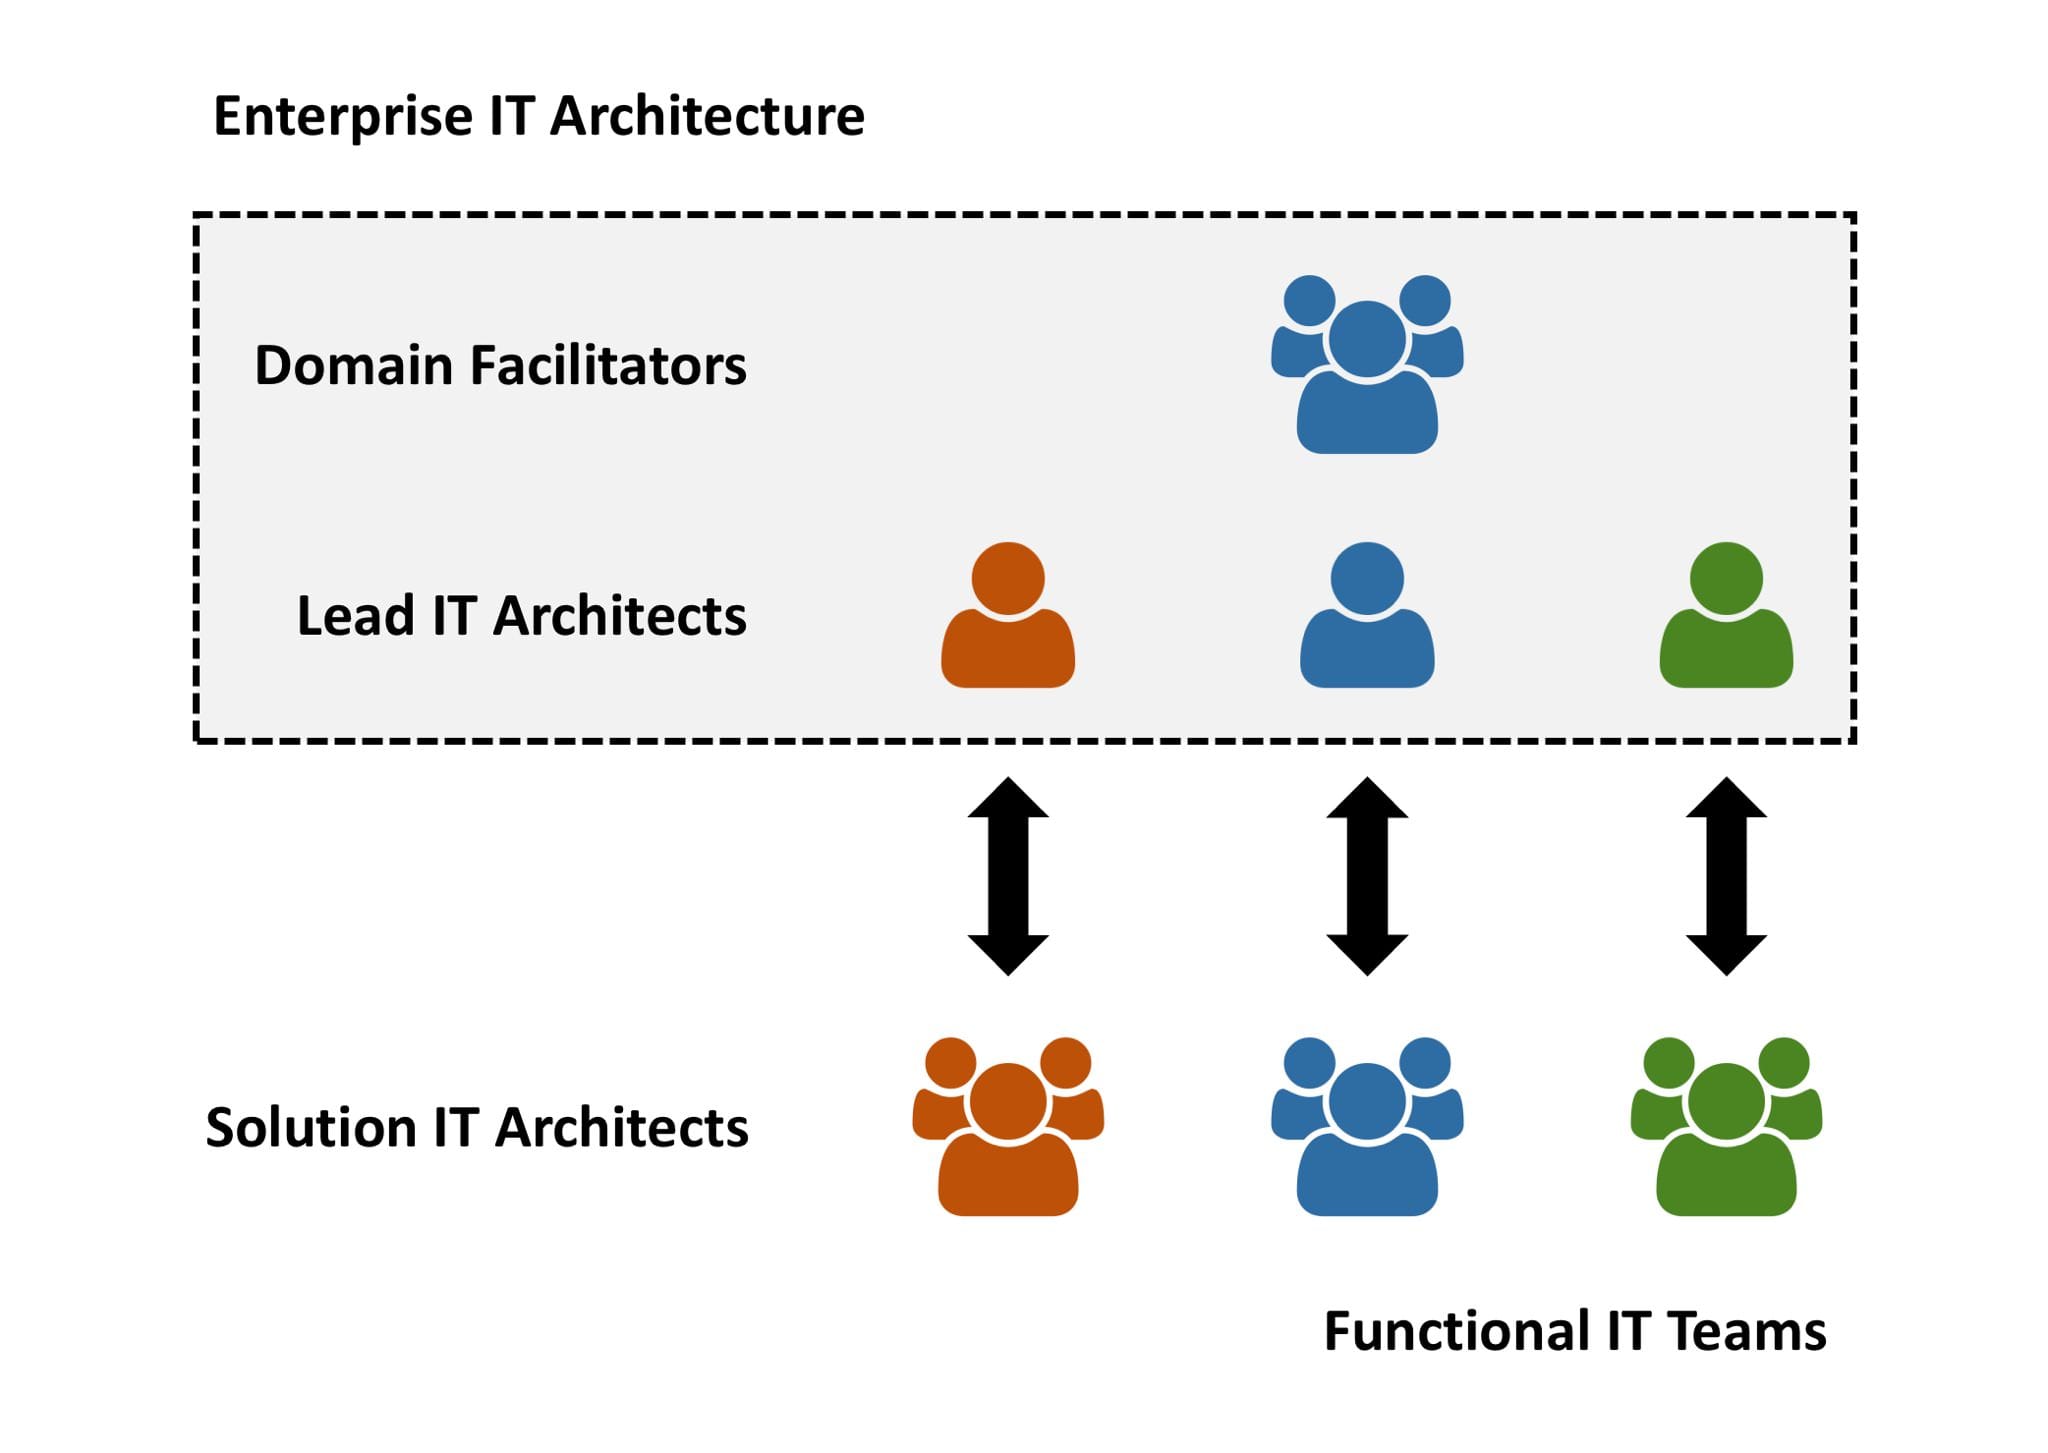 Enterprise IT Architecture - Structure